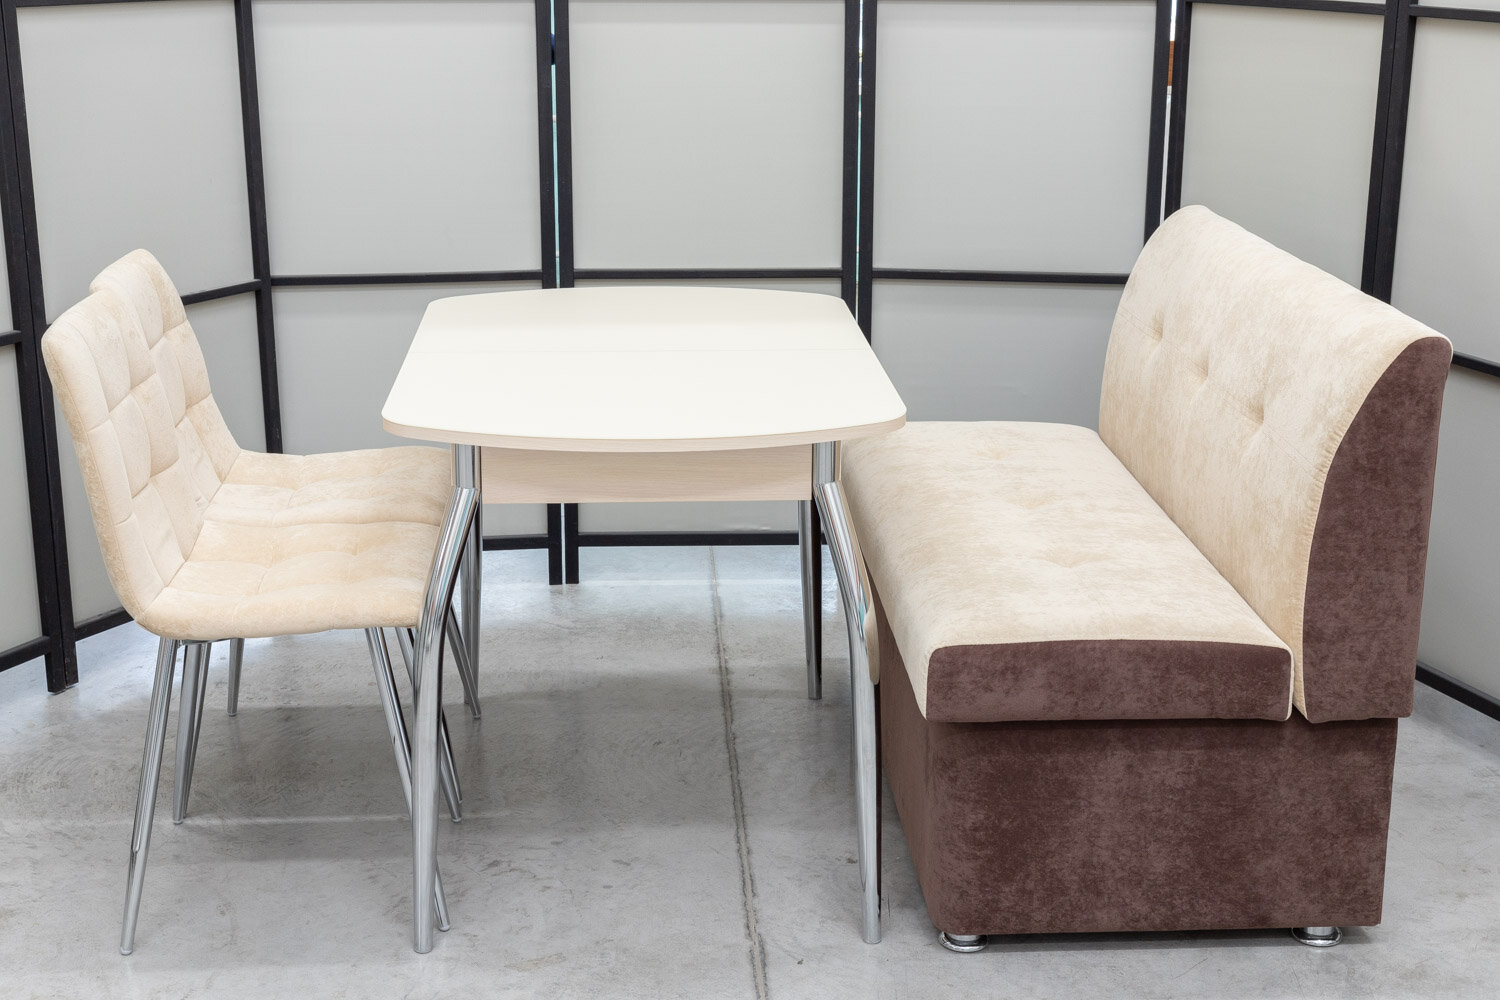 Обеденная группа Тетра-1 Дуо, стол матовое стекло, 110(140)х70 см, обивка дивана антивандальная, моющаяся, антикоготь, цвет кремовый, коричневый - фотография № 11